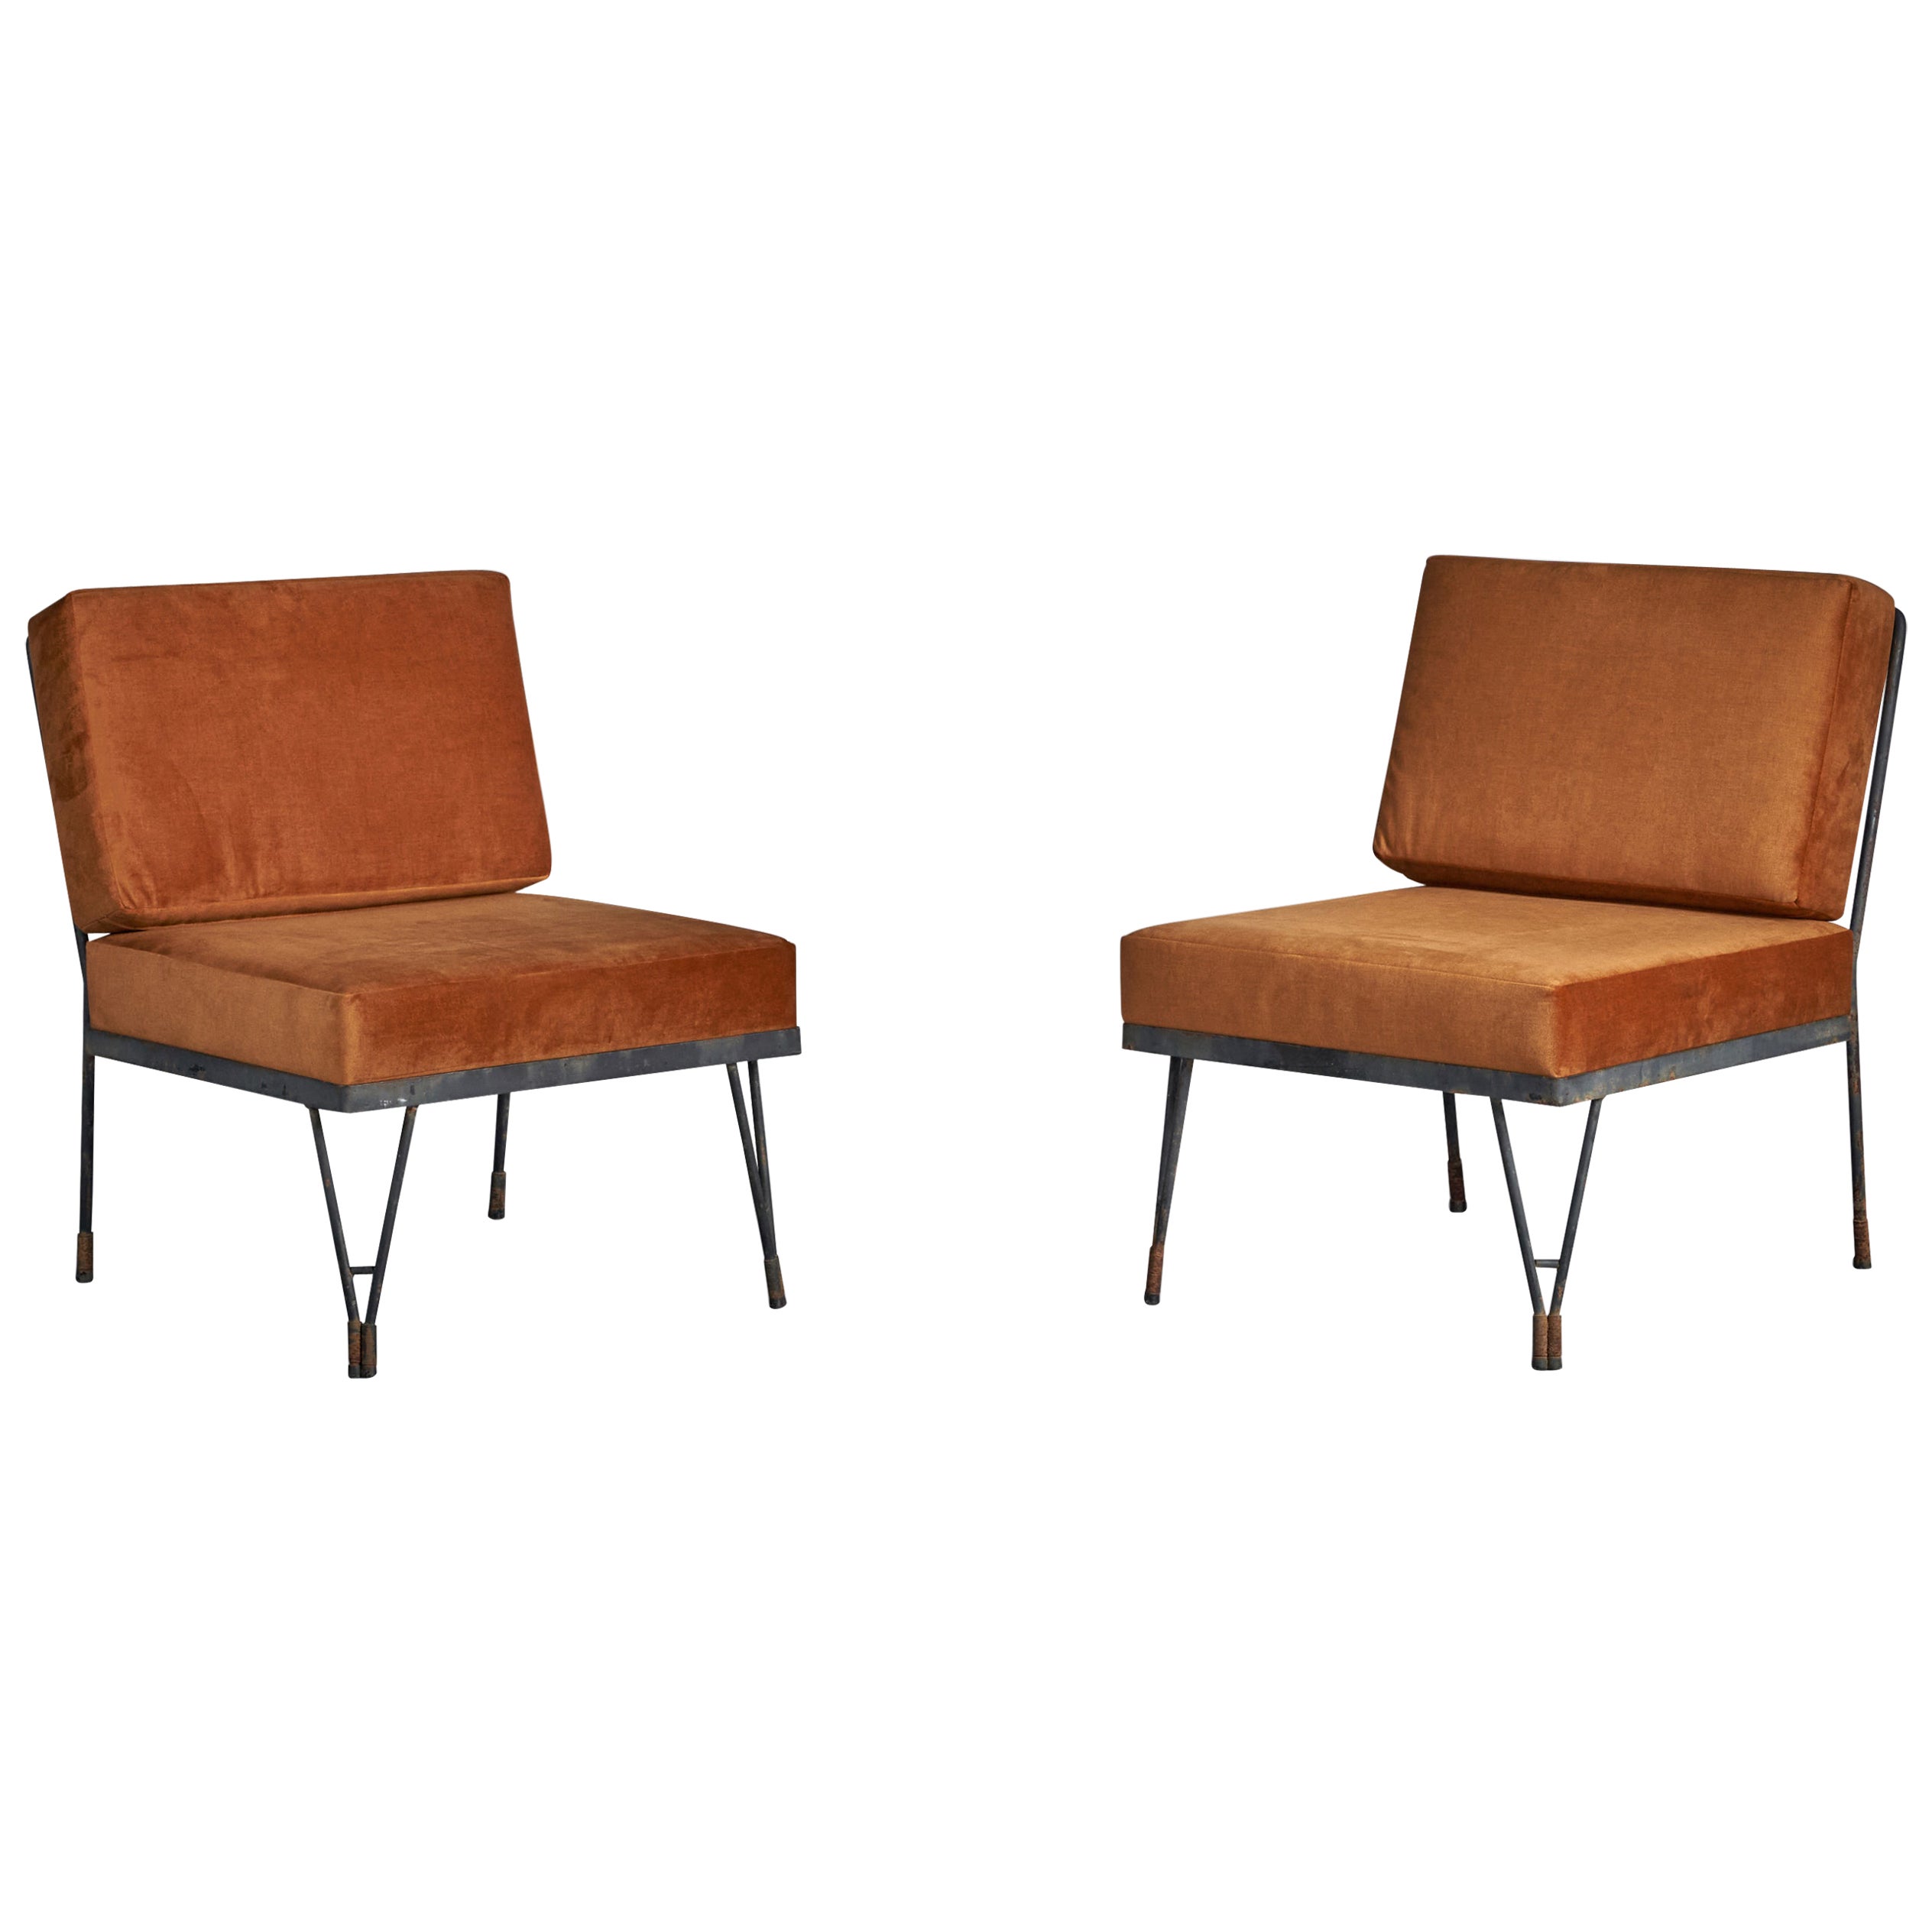 American Designer, Slipper Chairs, Metal, Velvet, Brass, USA, 1950s For Sale